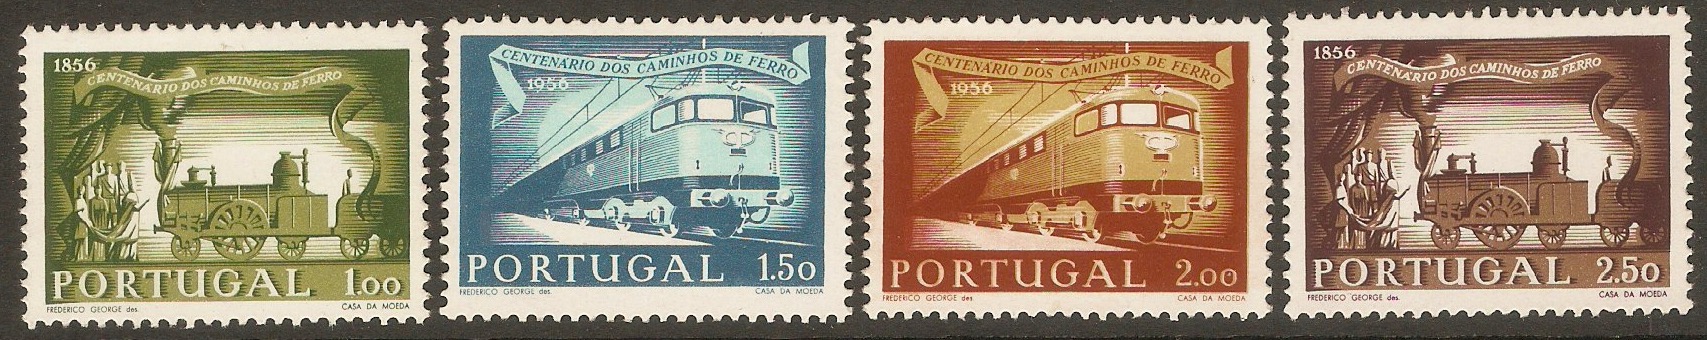 Portugal 1956 Railway Centenary set. SG1136-SG1139.